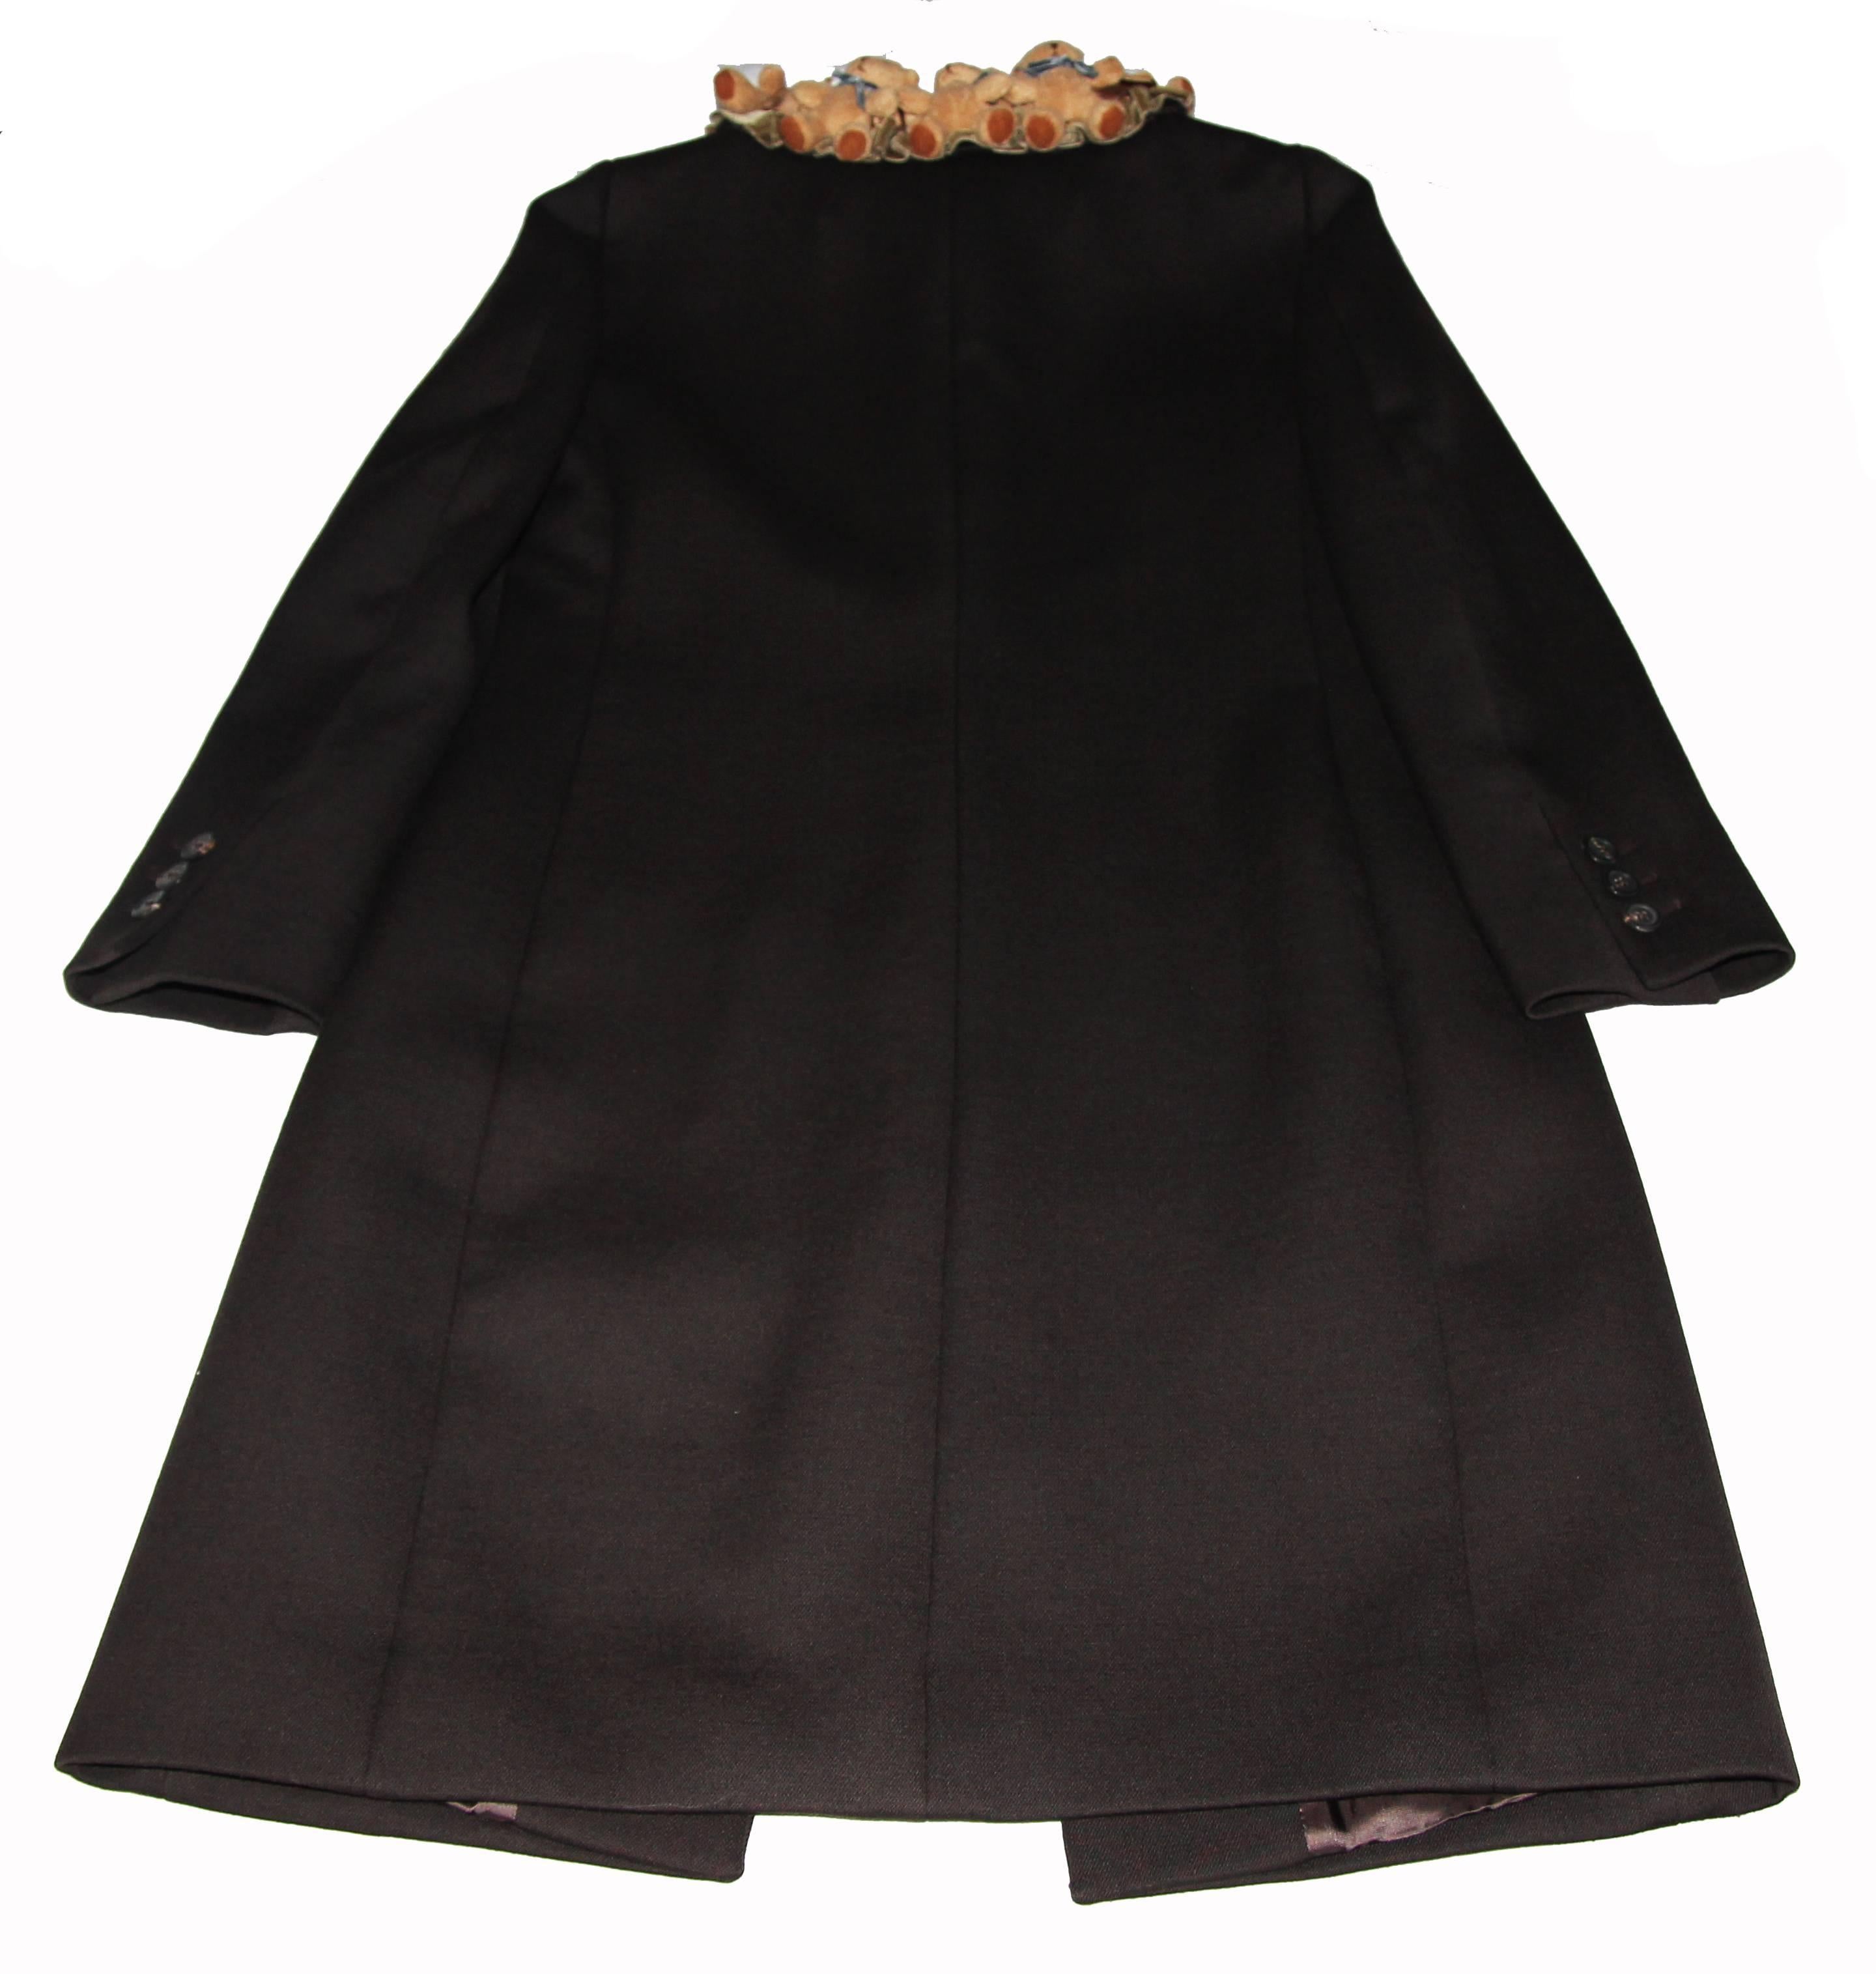 Black Incredible rare and collectable Moschino teddy bear collar coat 2011